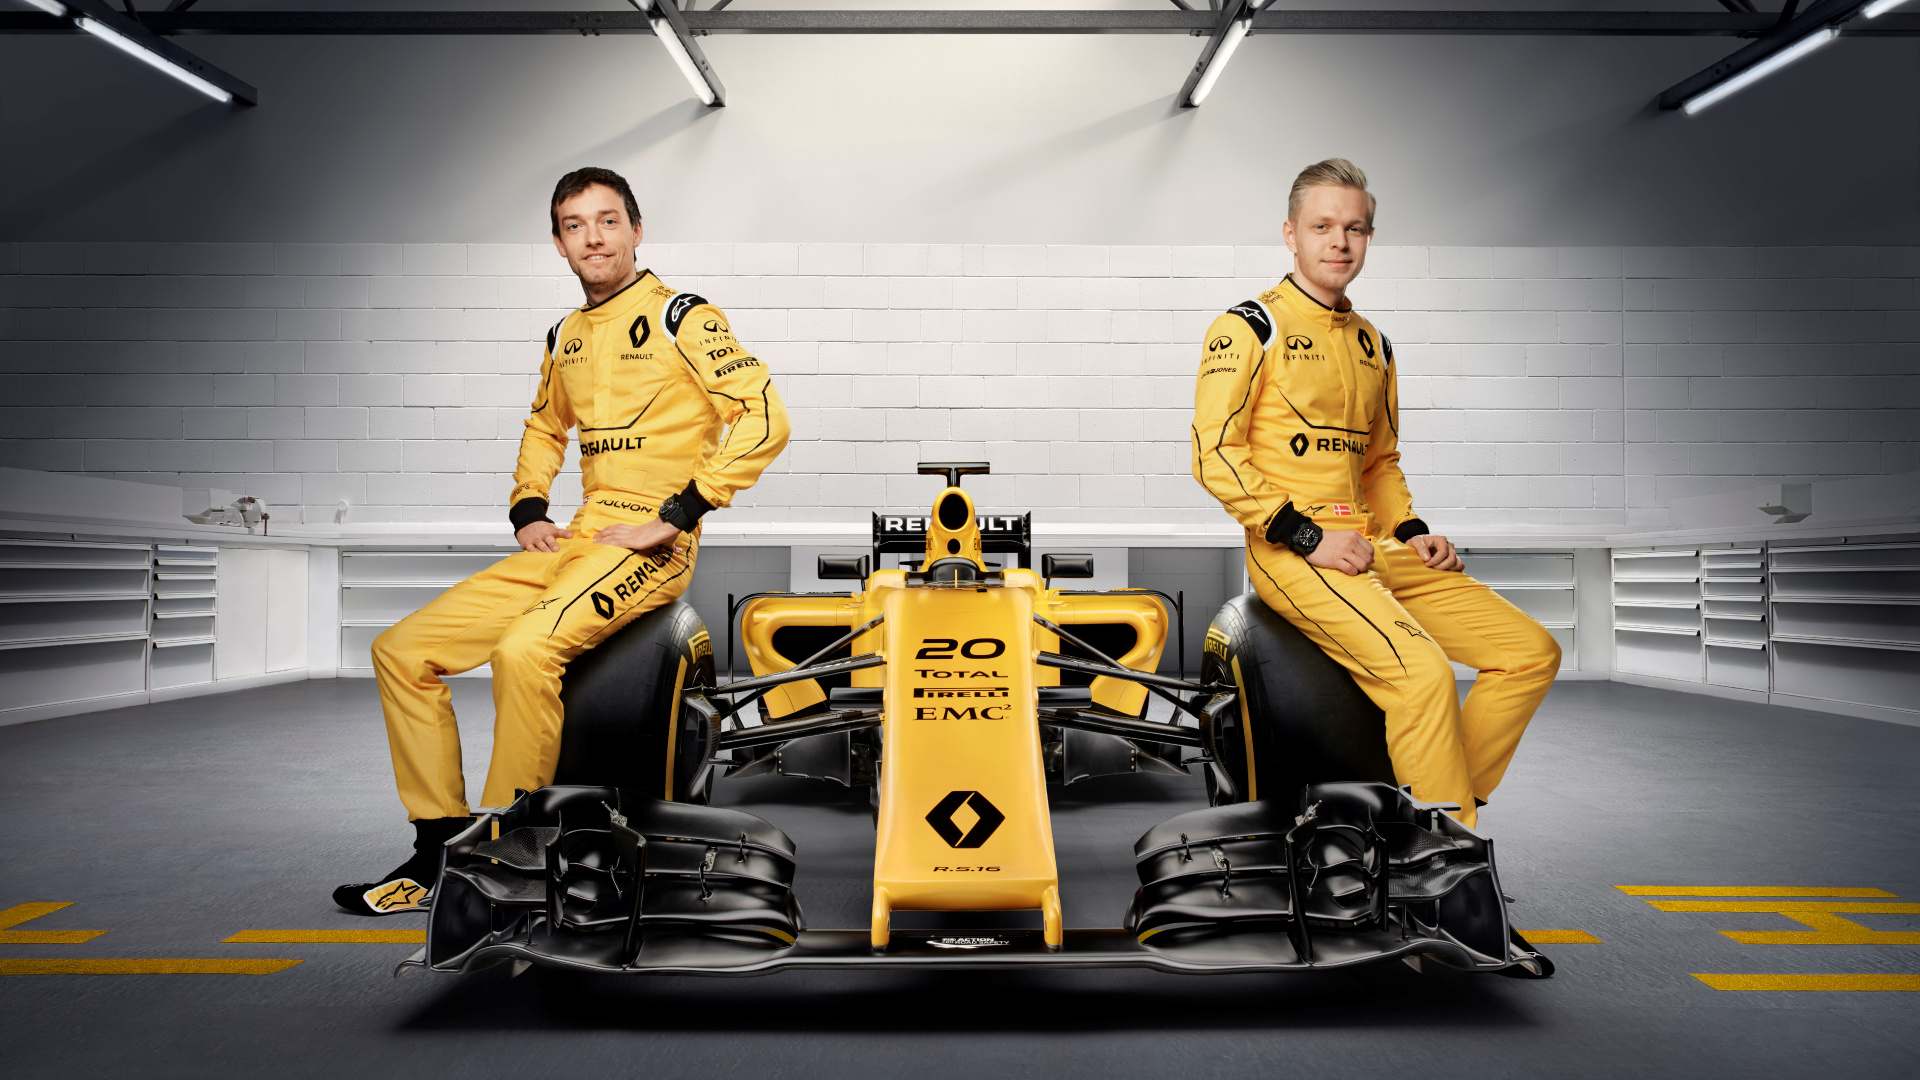 Обои 2016 Формула Один Чемпионат Мира, автогонки, Рено, желтый, команда в разрешении 1920x1080